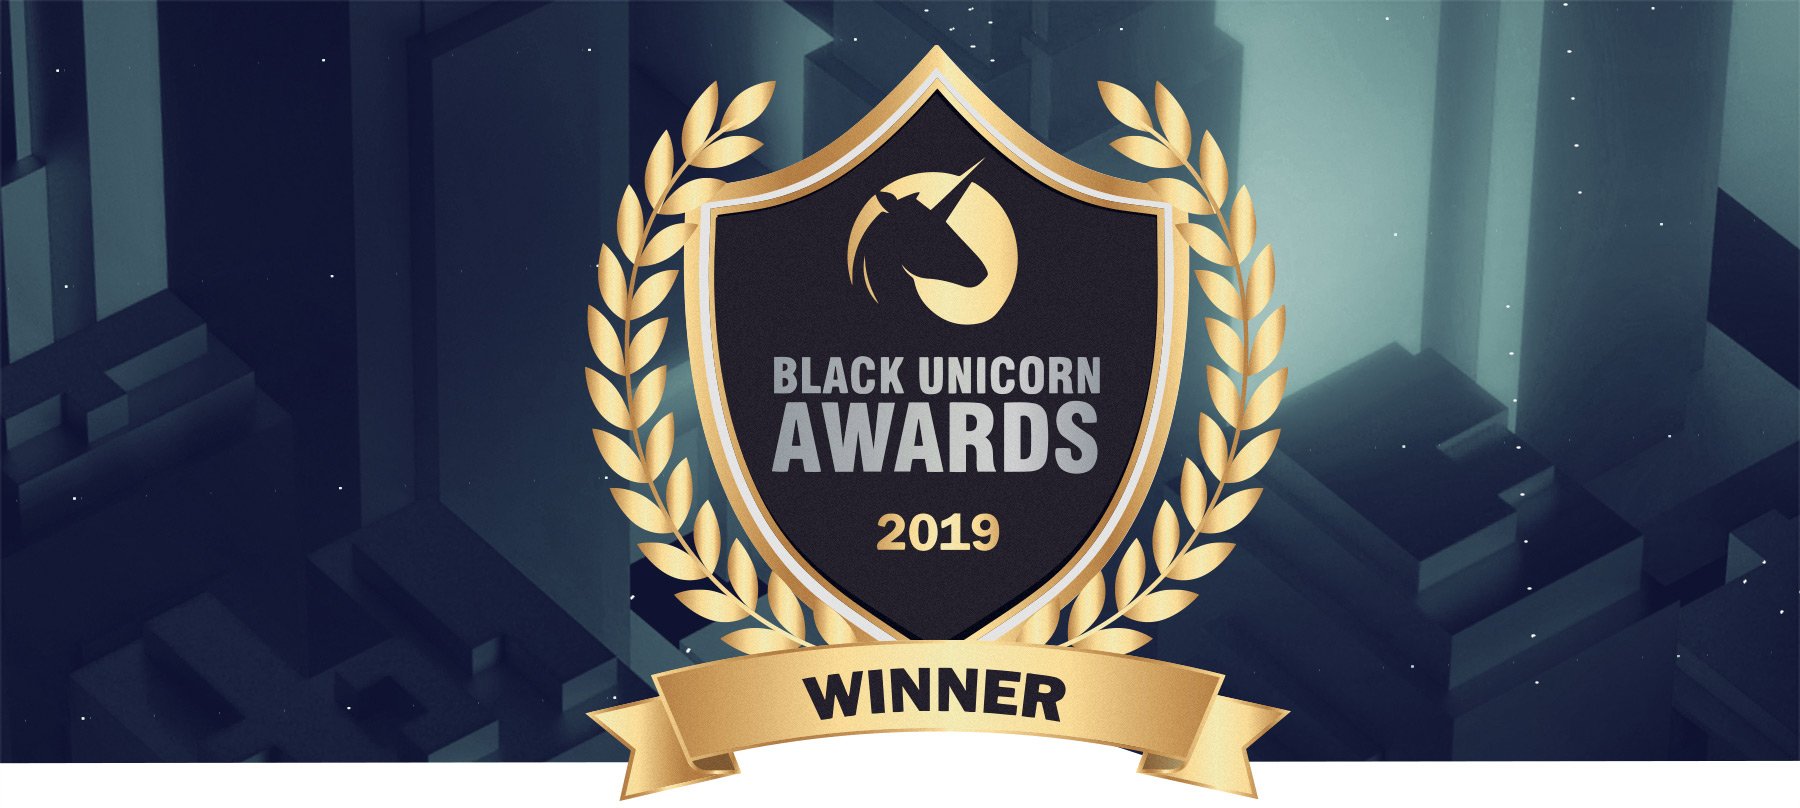 ReversingLabs Named a Winner in 2019 Black Unicorn Awards